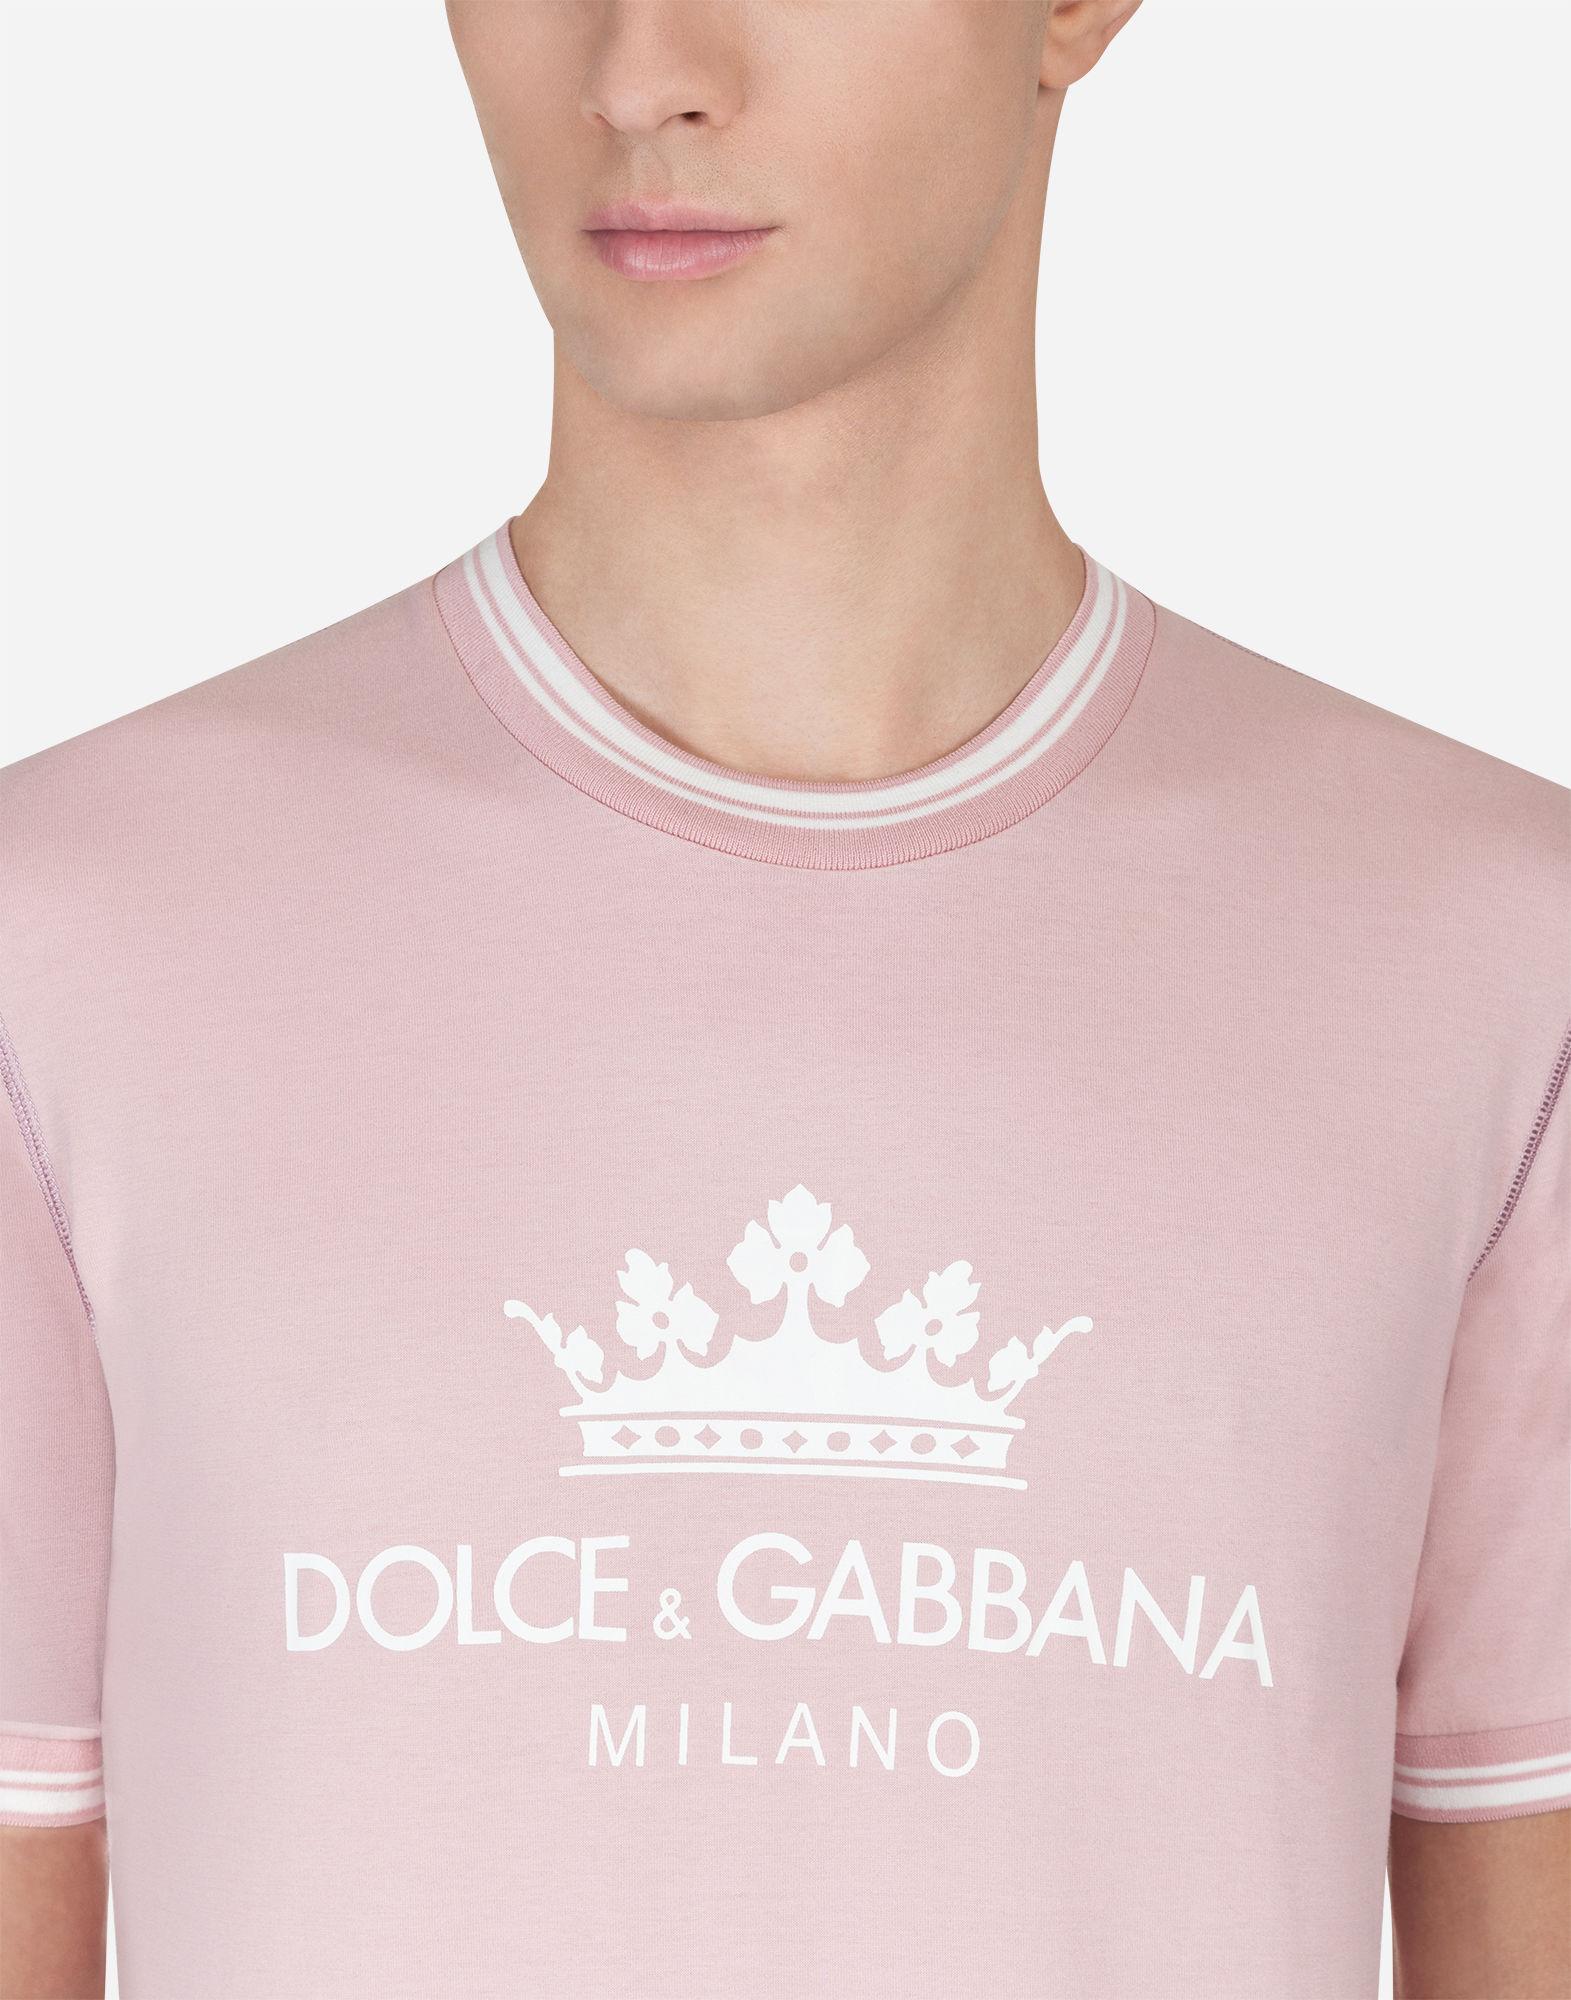 Top 52+ imagen dolce and gabbana shirt pink